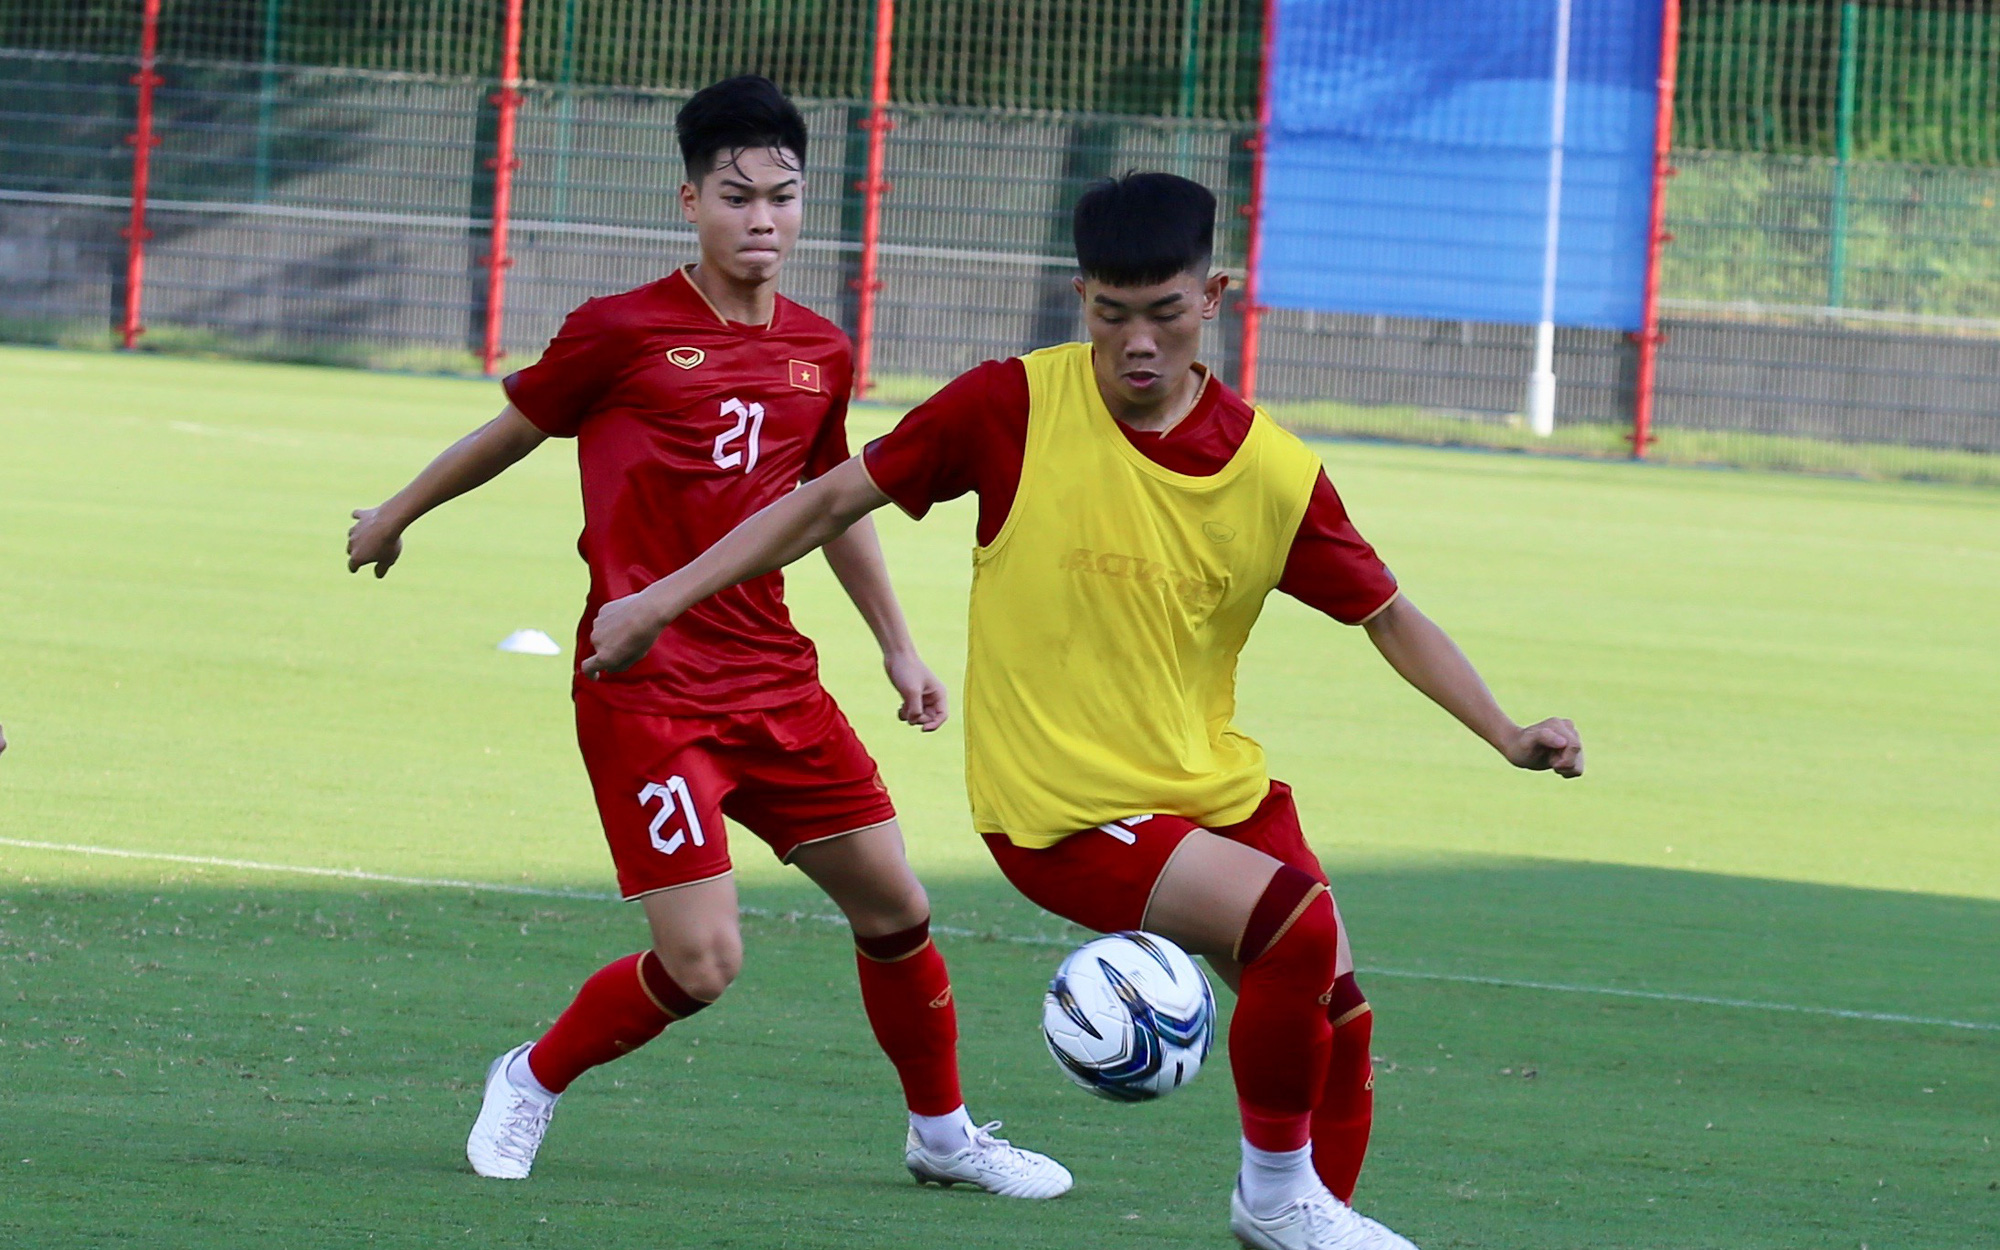 HLV Hoàng Anh Tuấn: "Olympic Việt Nam sẽ chơi kiểm soát bóng"